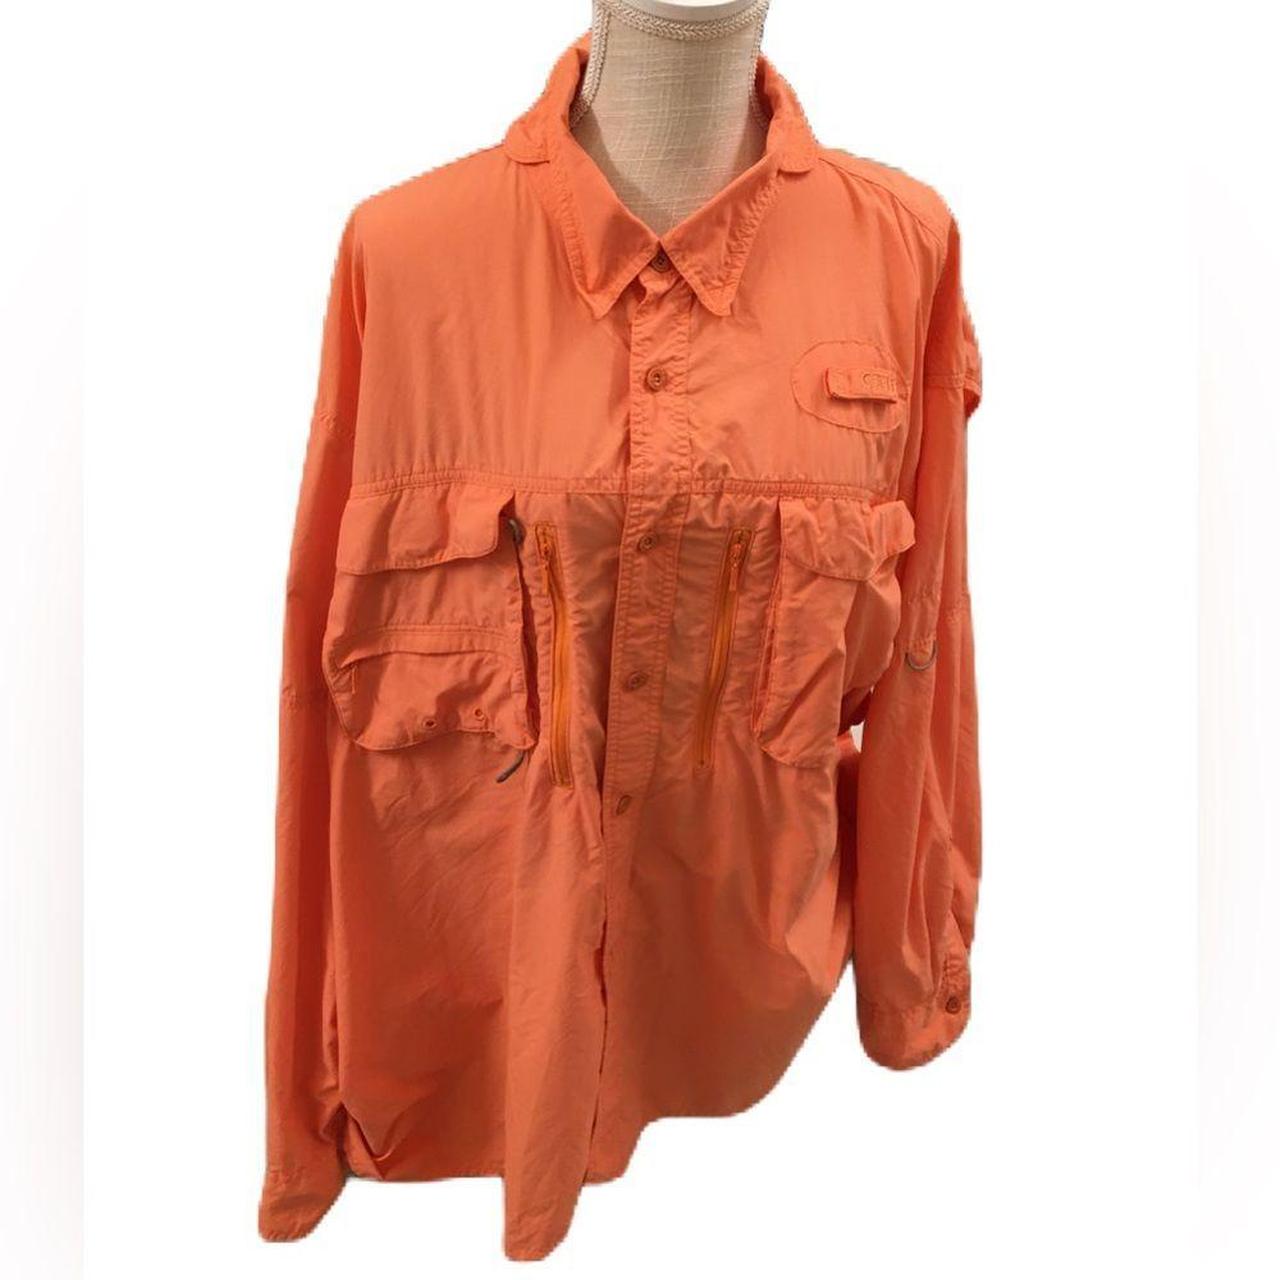 Magellan Men's Fishing Shirt 3XL Orange Angler Fit - Depop